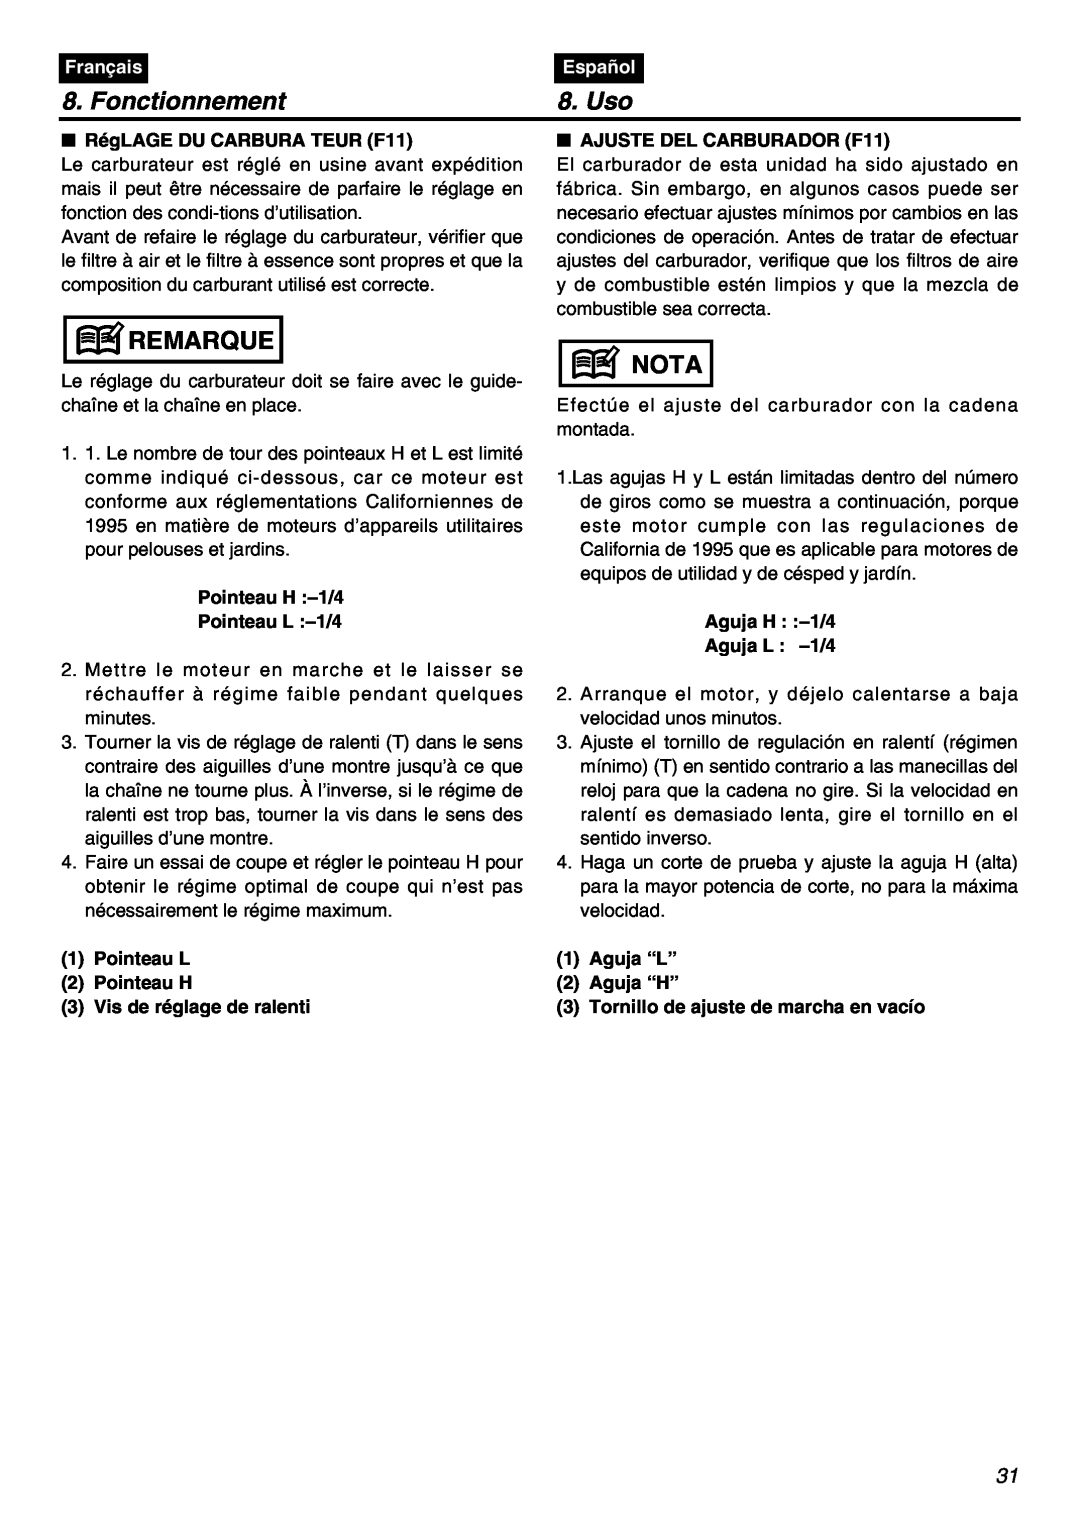 Zenoah G5000AVS manual Fonctionnement, Uso, Remarque, Nota, Français, Español, RégLAGE DU CARBURA TEUR F11 